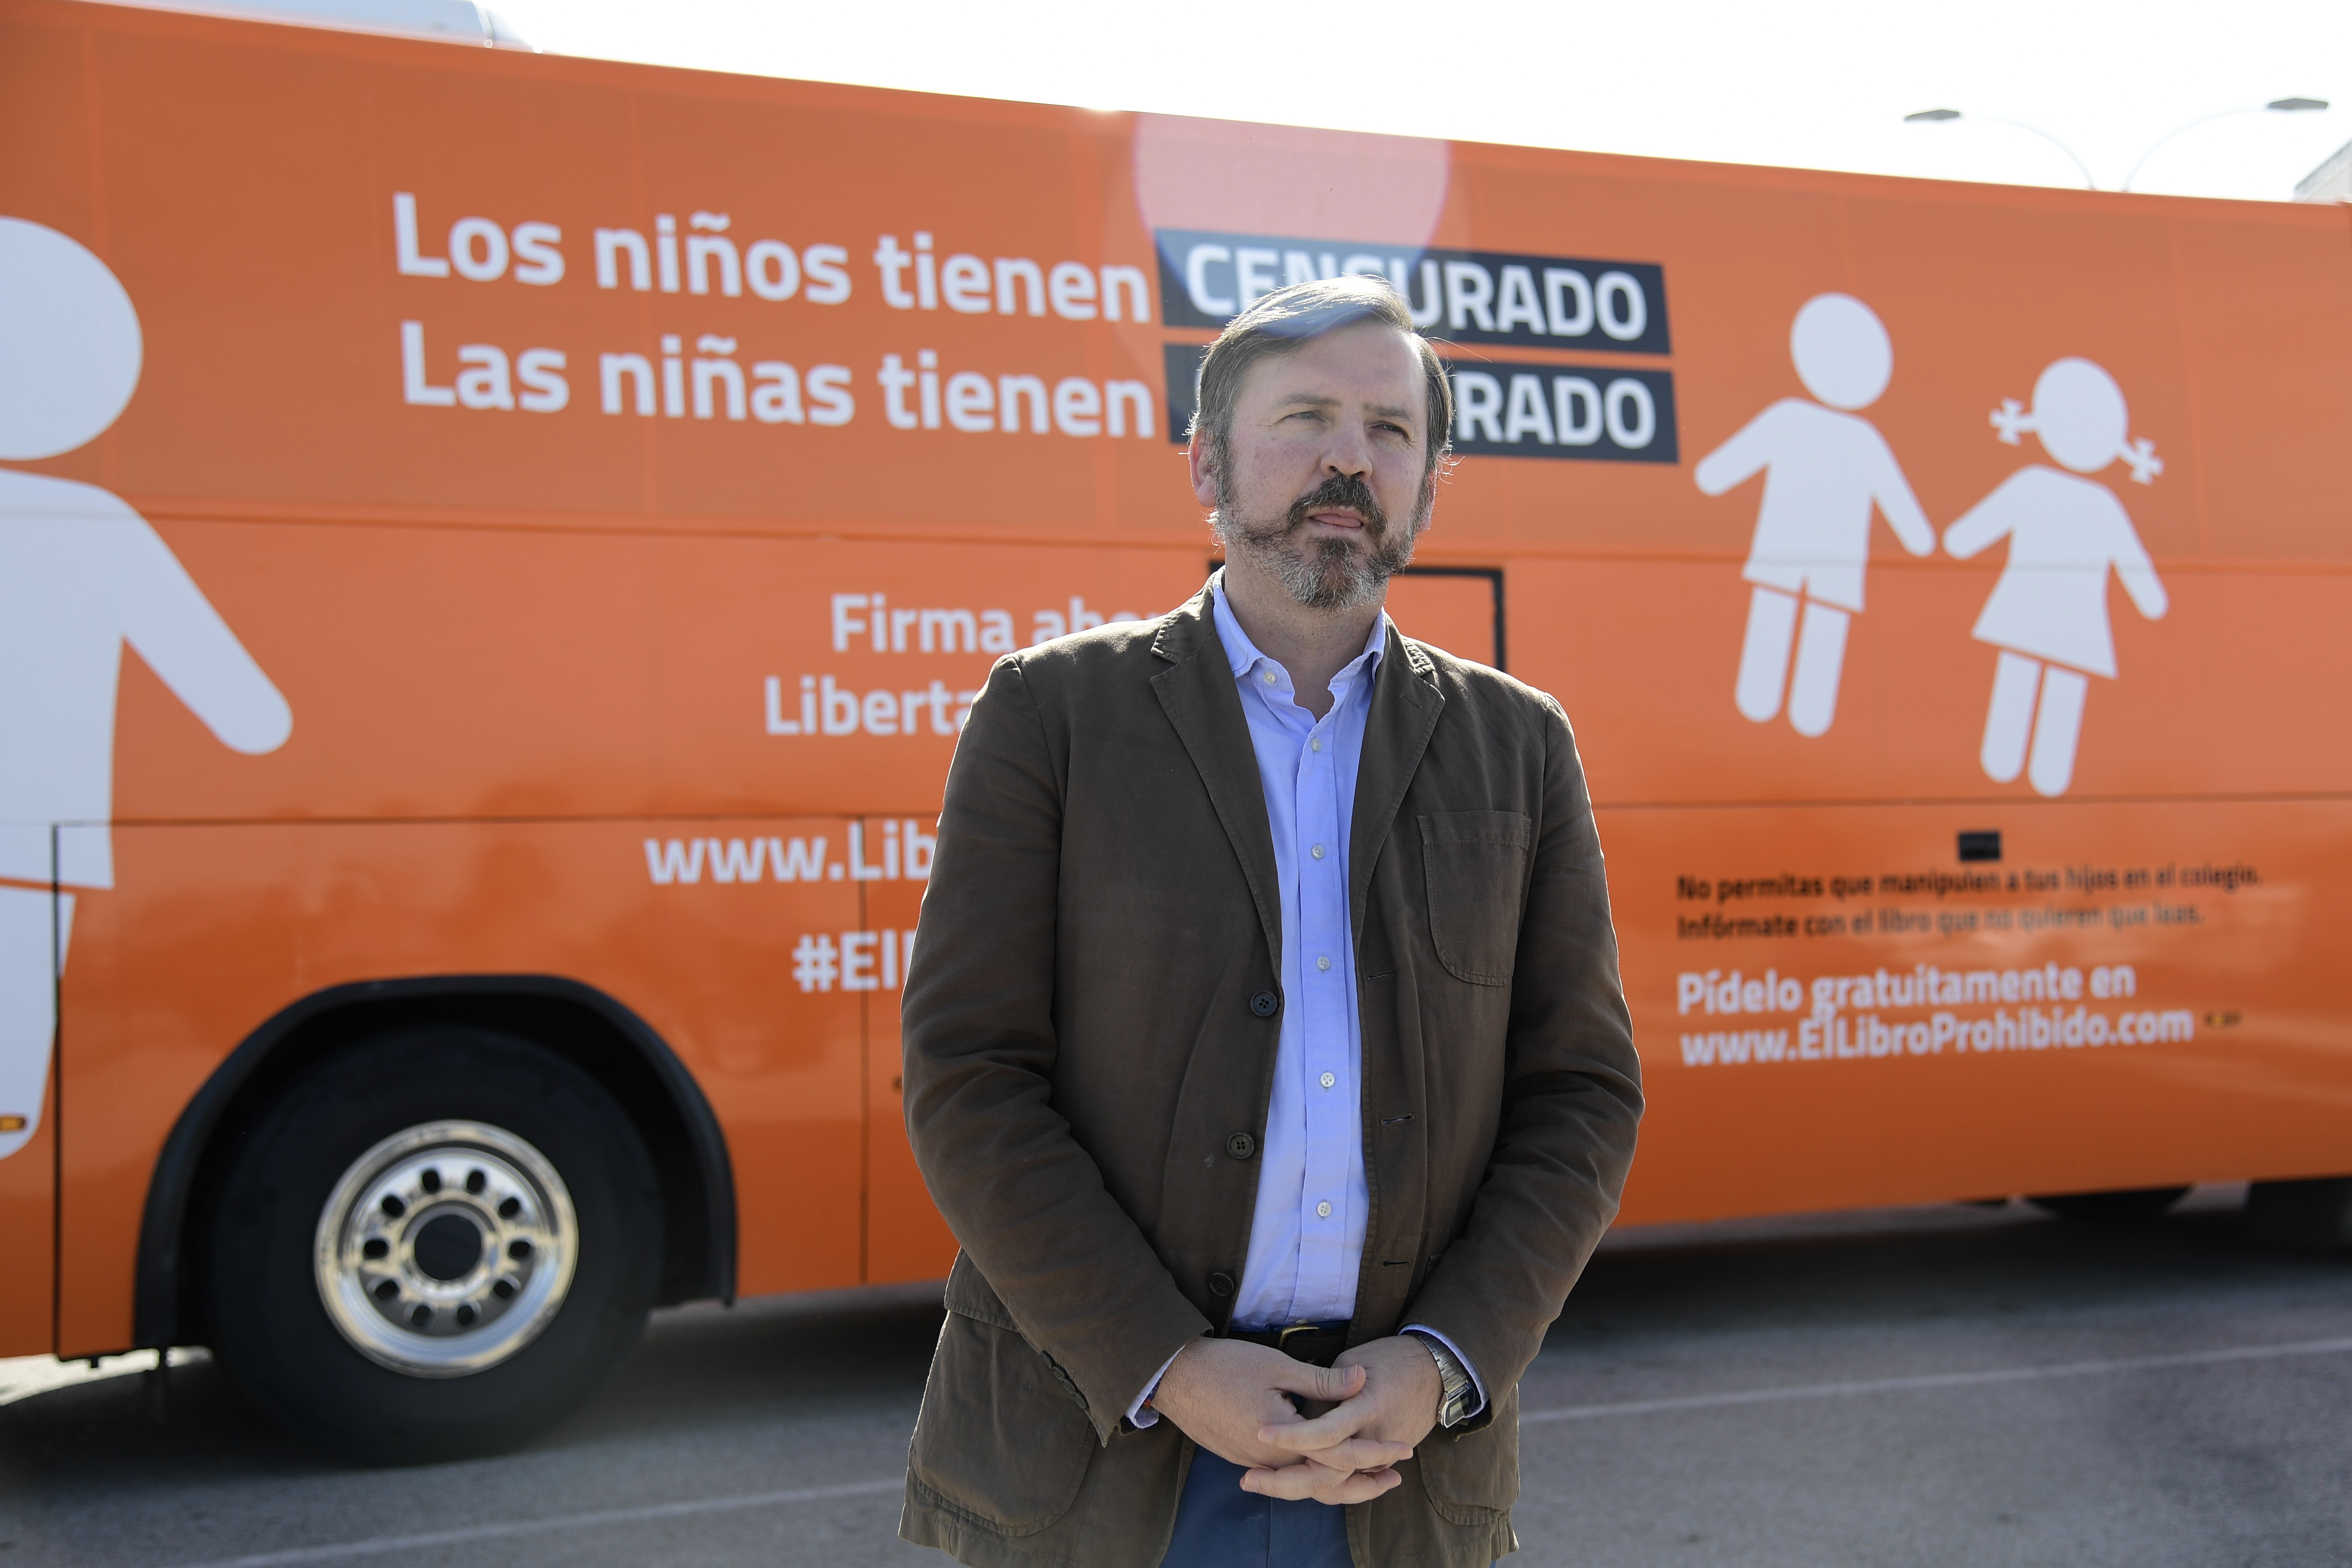 Ignacio Arsuaga a spanyol hatóságok által lefoglalt busz előtt